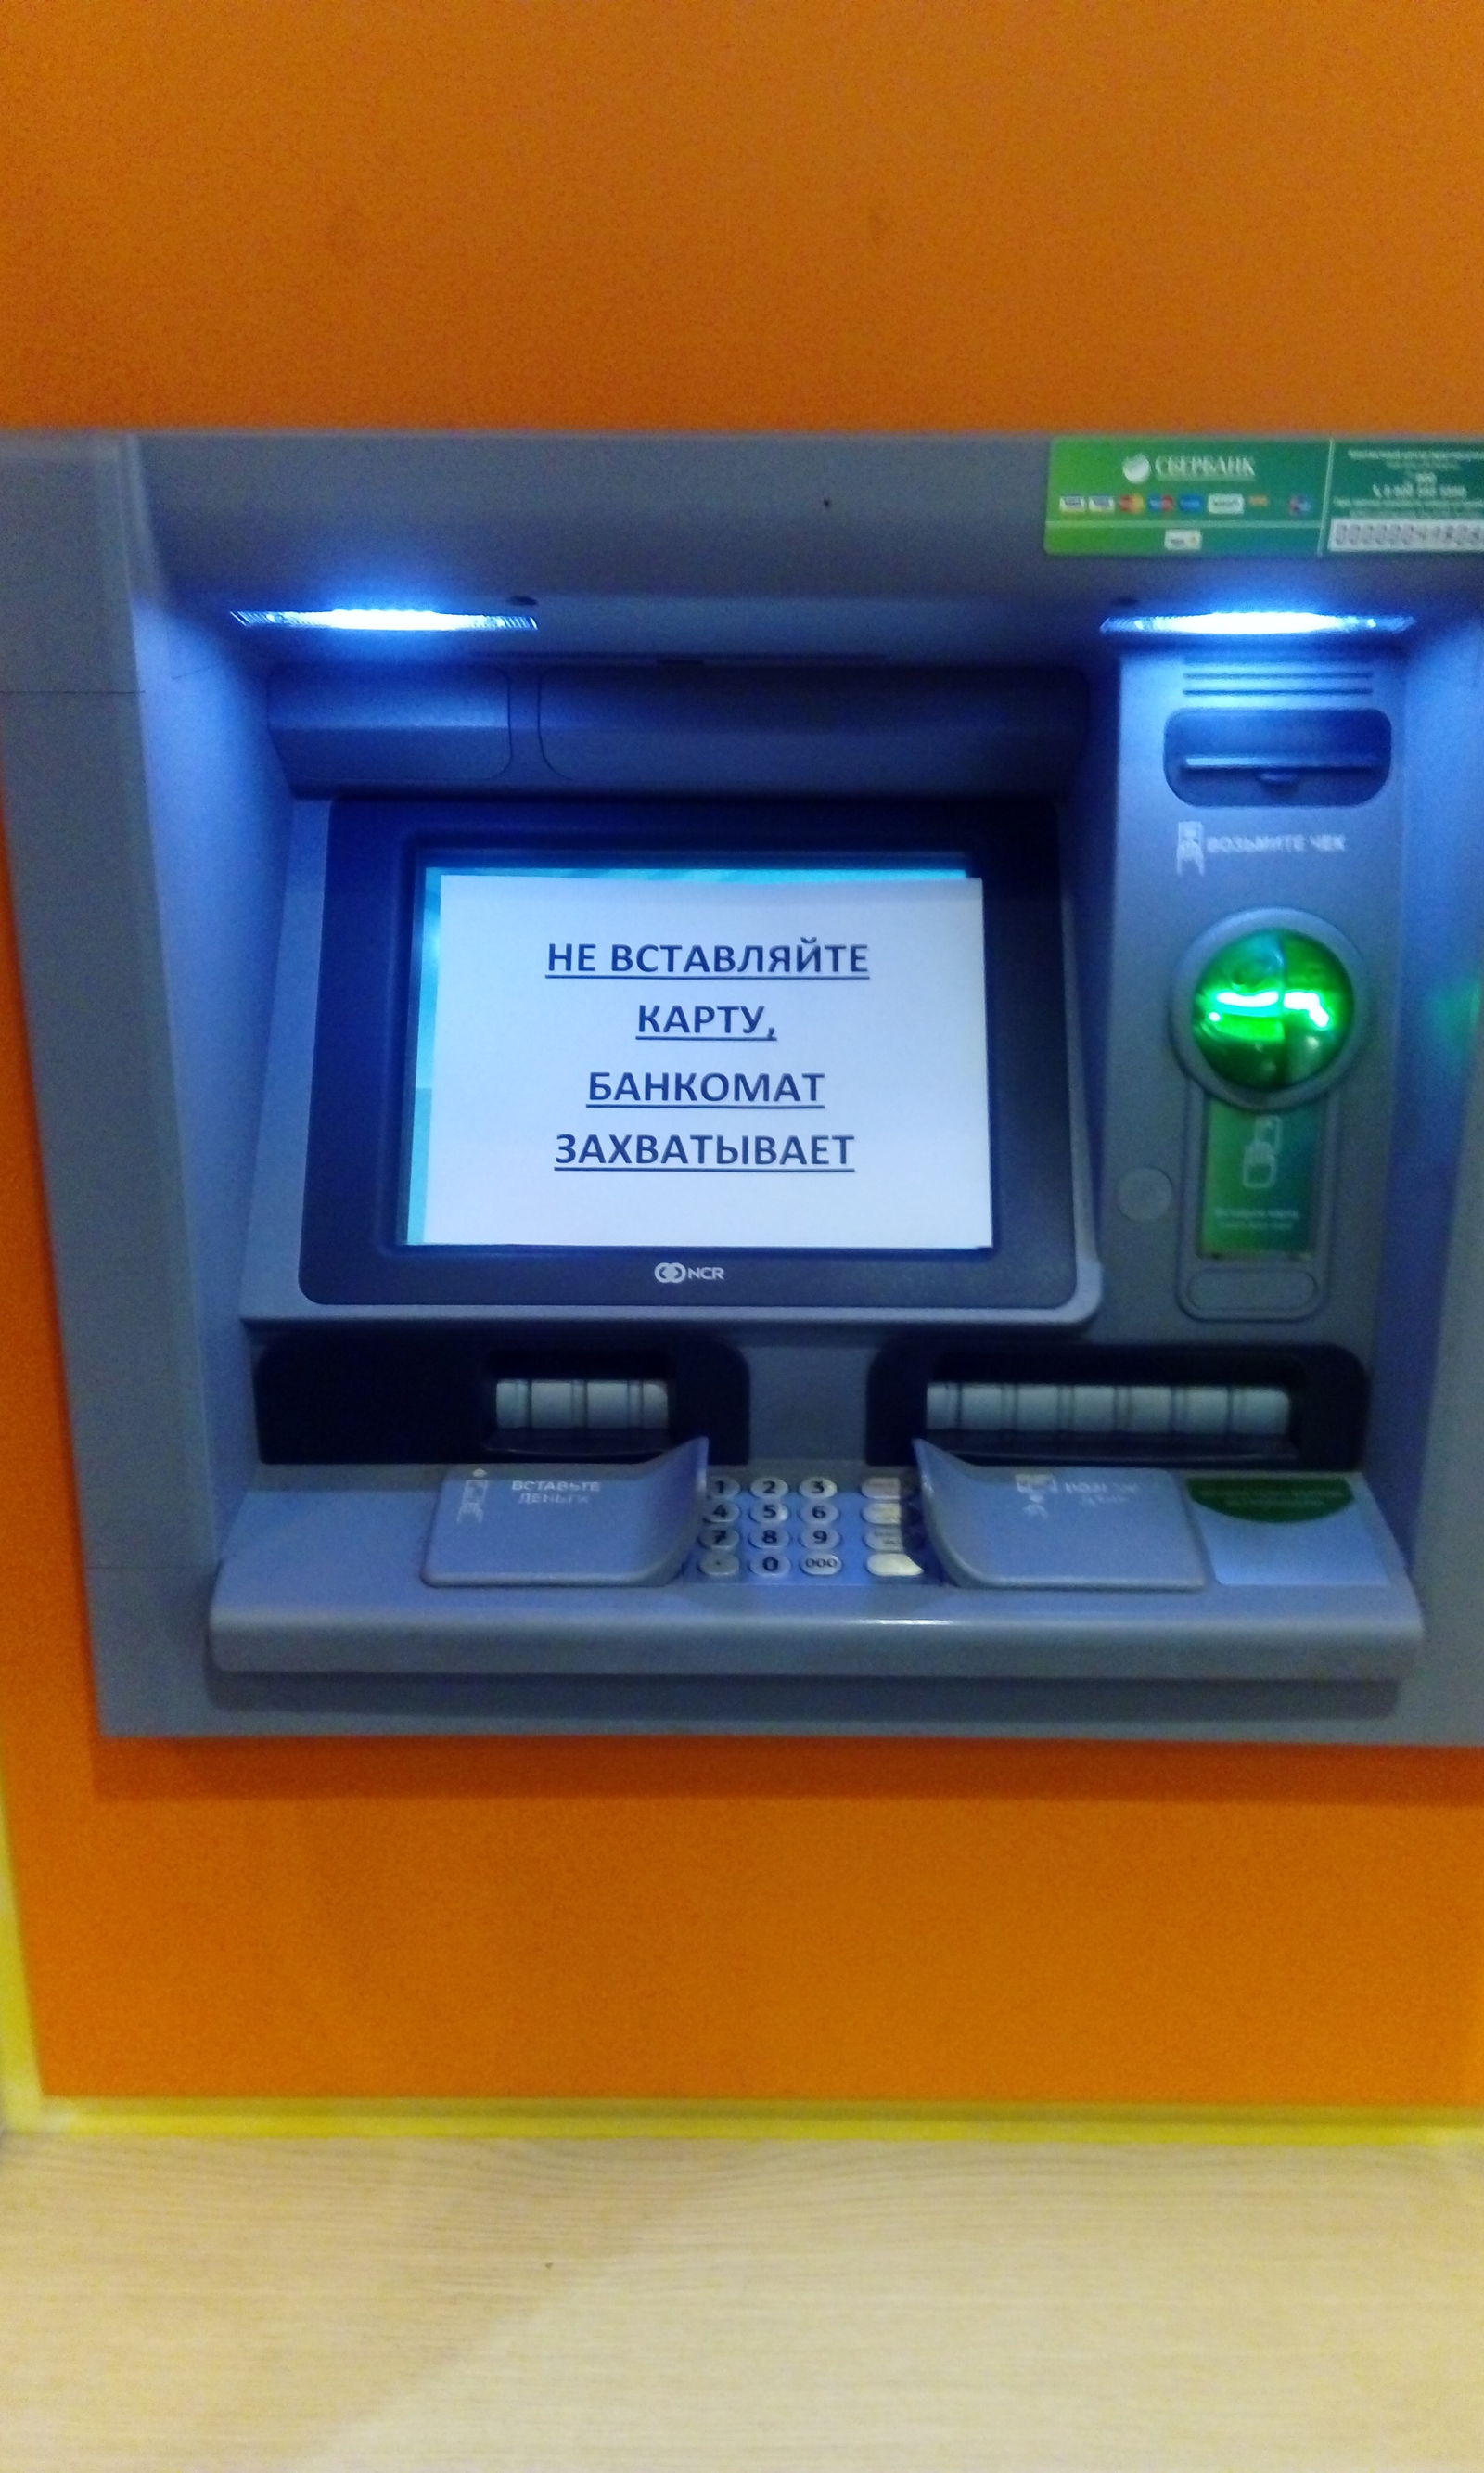 Сбербанк заблокирует банкоматы. Банкомат. Экран банкомата. Терминал банкомата. Карта в банкомате.